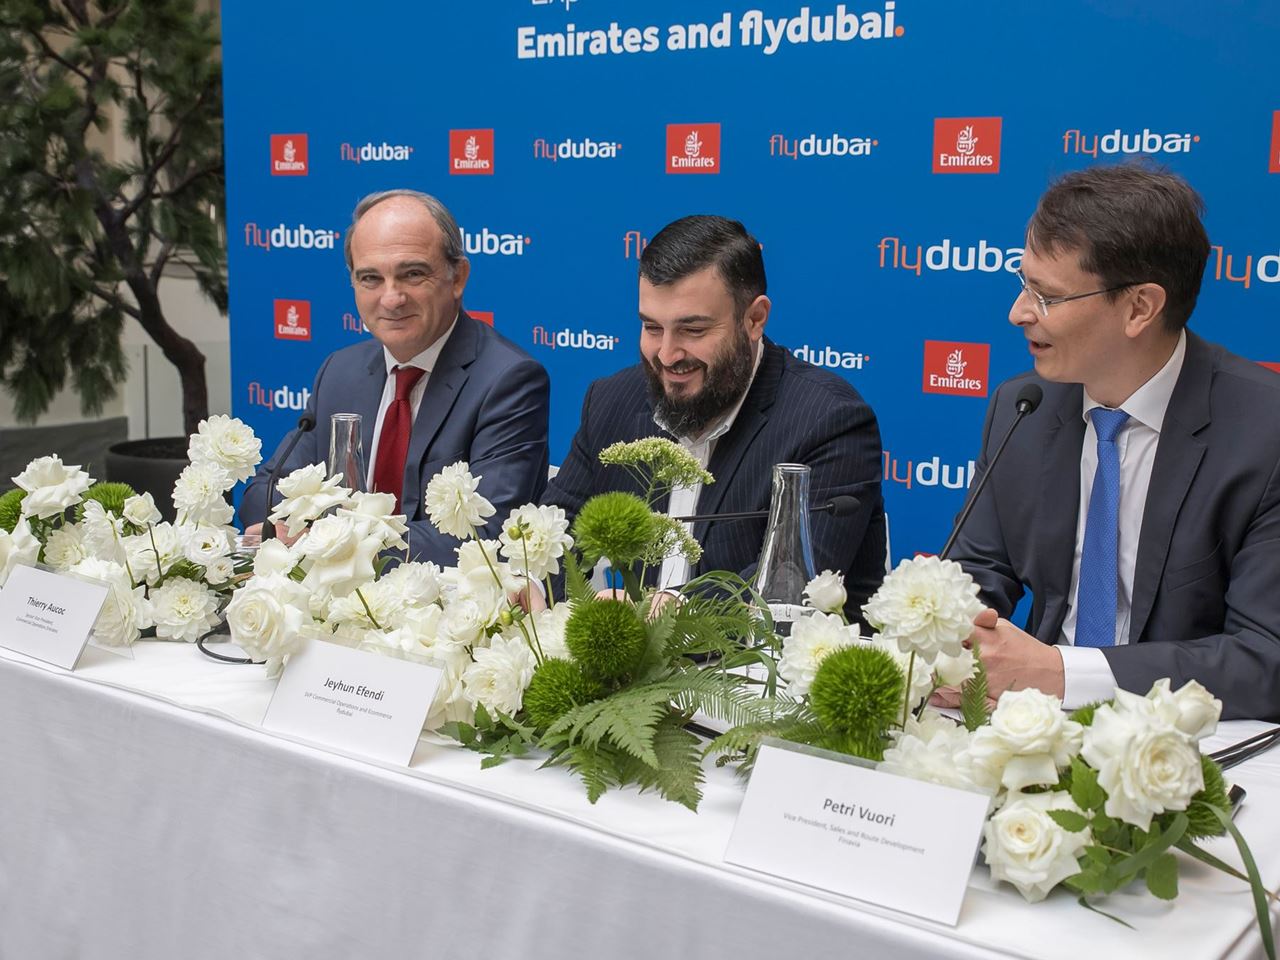 flydubai inaugural flight lands in Helsinki